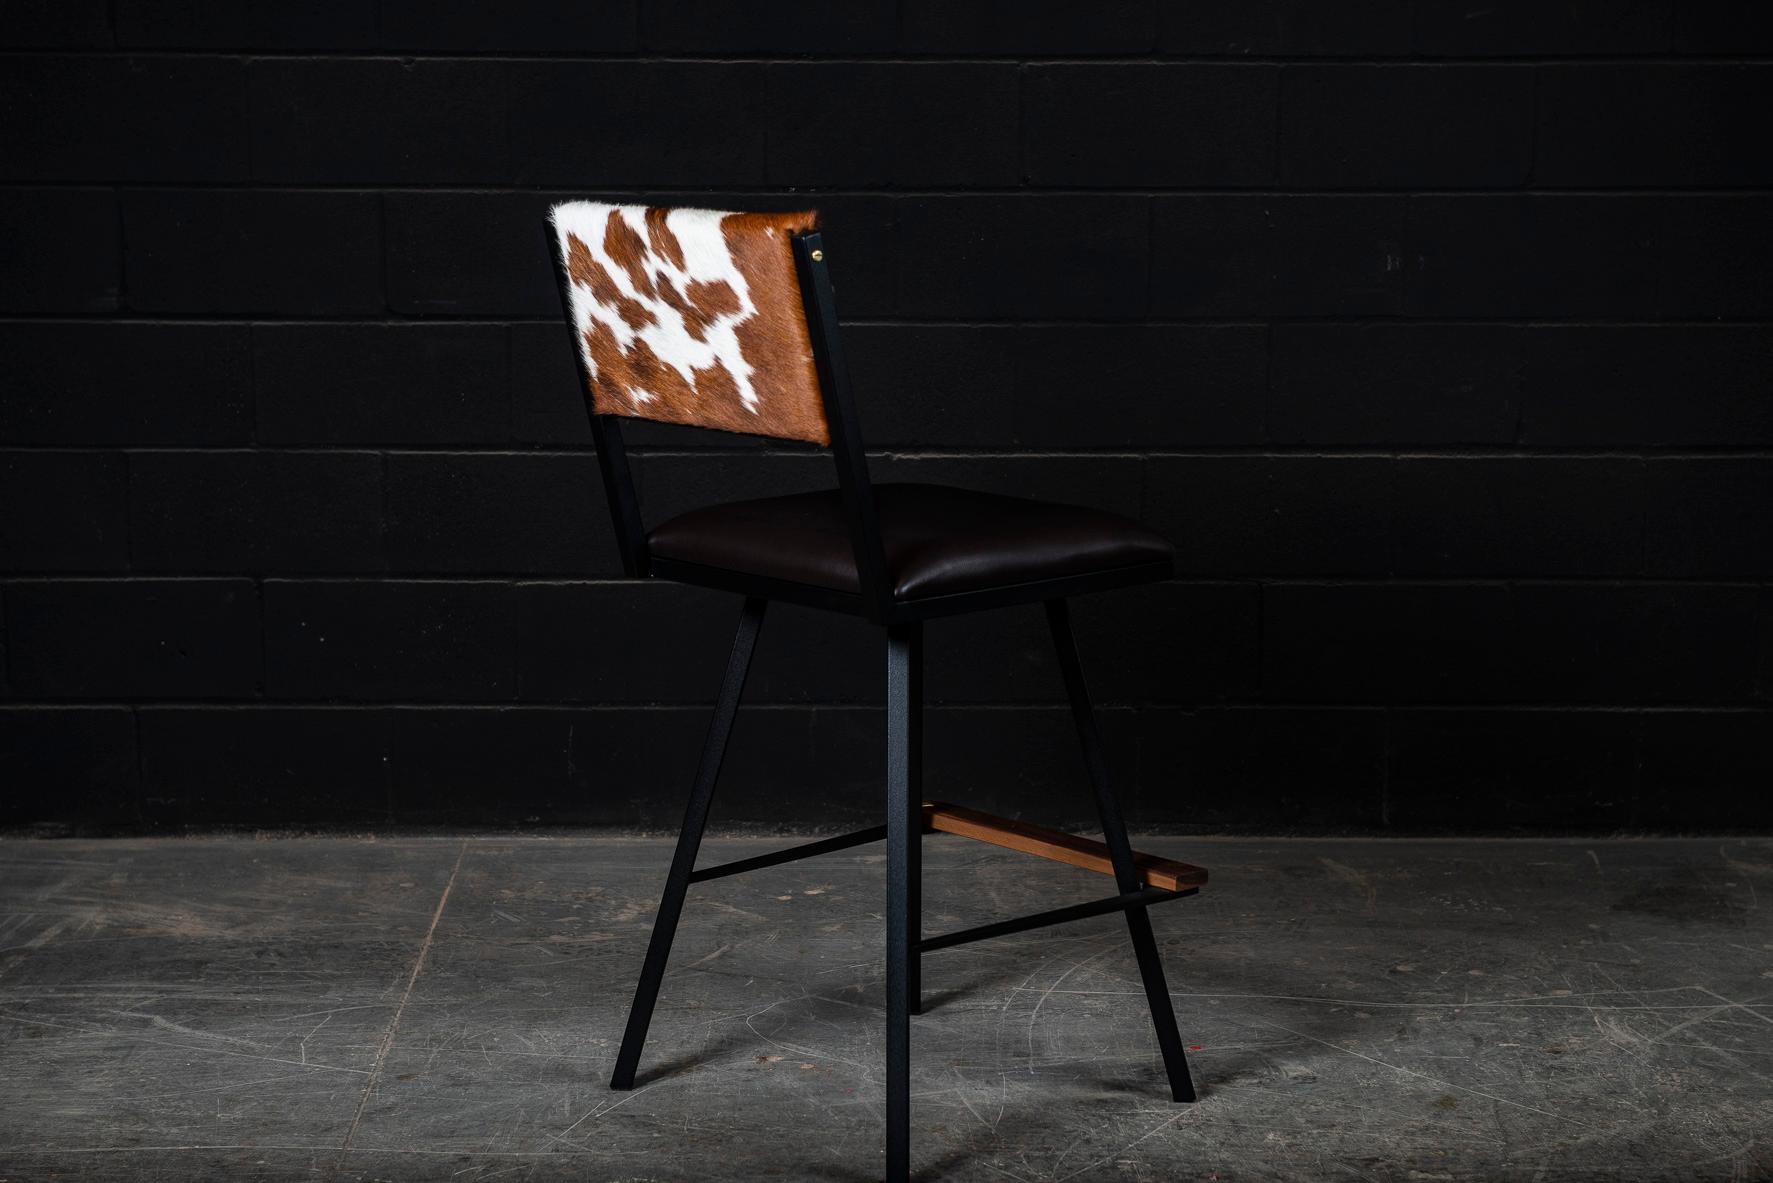 Der Shaker-Bar-Drehstuhl wird auf Bestellung aus unserem einzigartigen, schwarz strukturierten AMBROZIA-Stahlrohrrahmen gefertigt. Dieser zeitgenössische / moderne Drehsessel ist in einer großen Auswahl an echten Ledern, Vinyls und Fellen erhältlich